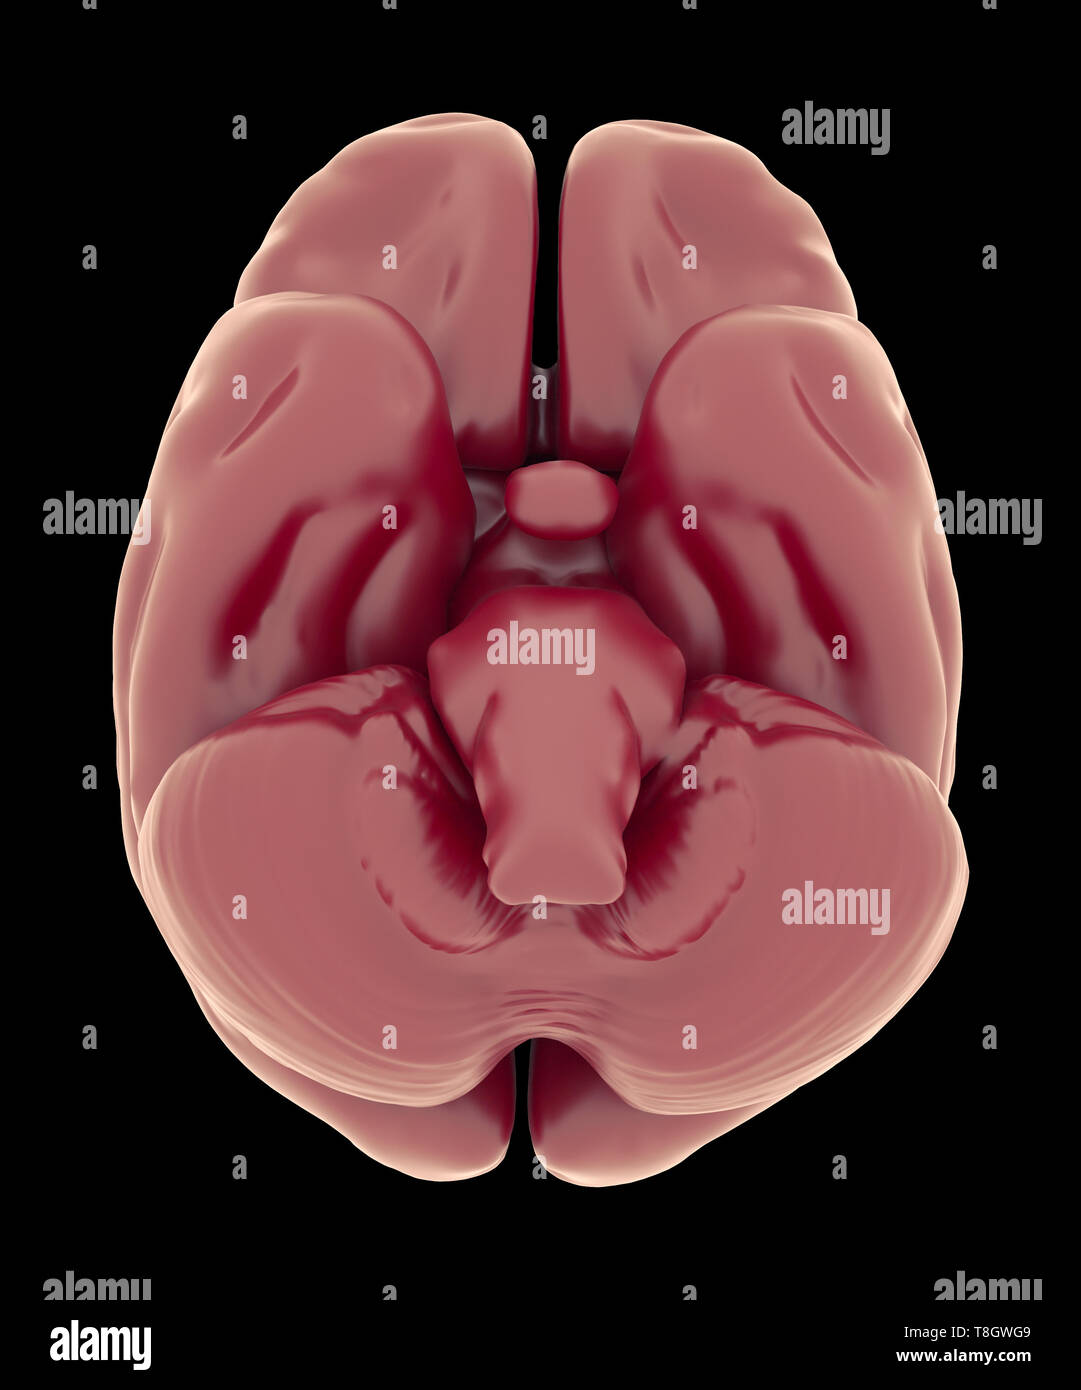 Ansicht von Unten des Gehirns und Hirnstamm. Anatomie Bildung und medizinische Forschung Konzept Stockfoto